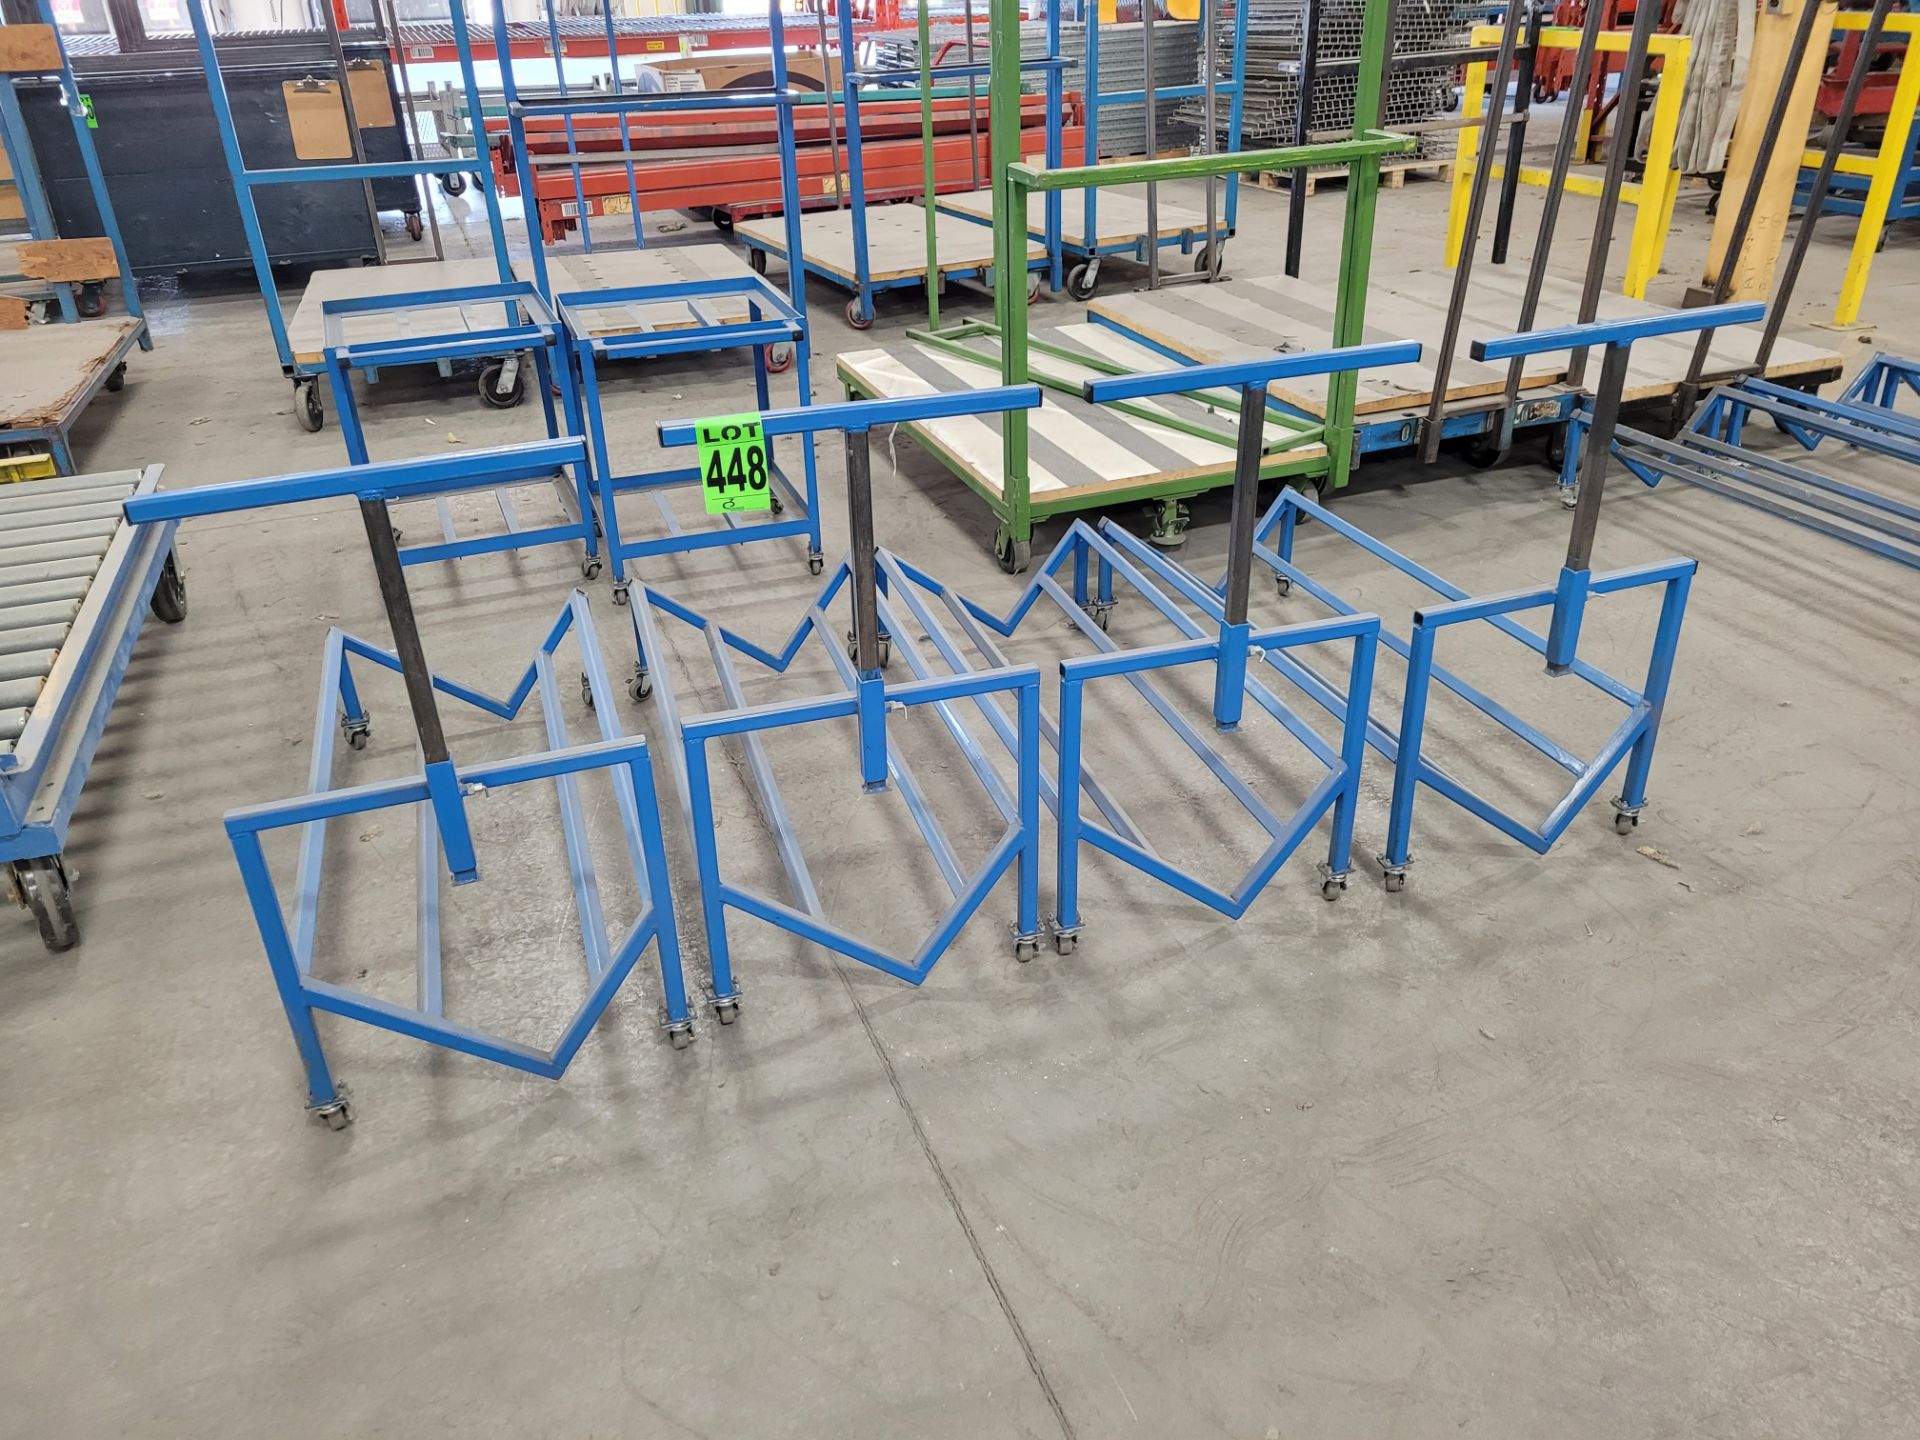 Lot of (4) steel frame , V-shape carts on casters w/ adjustable T-bar handle